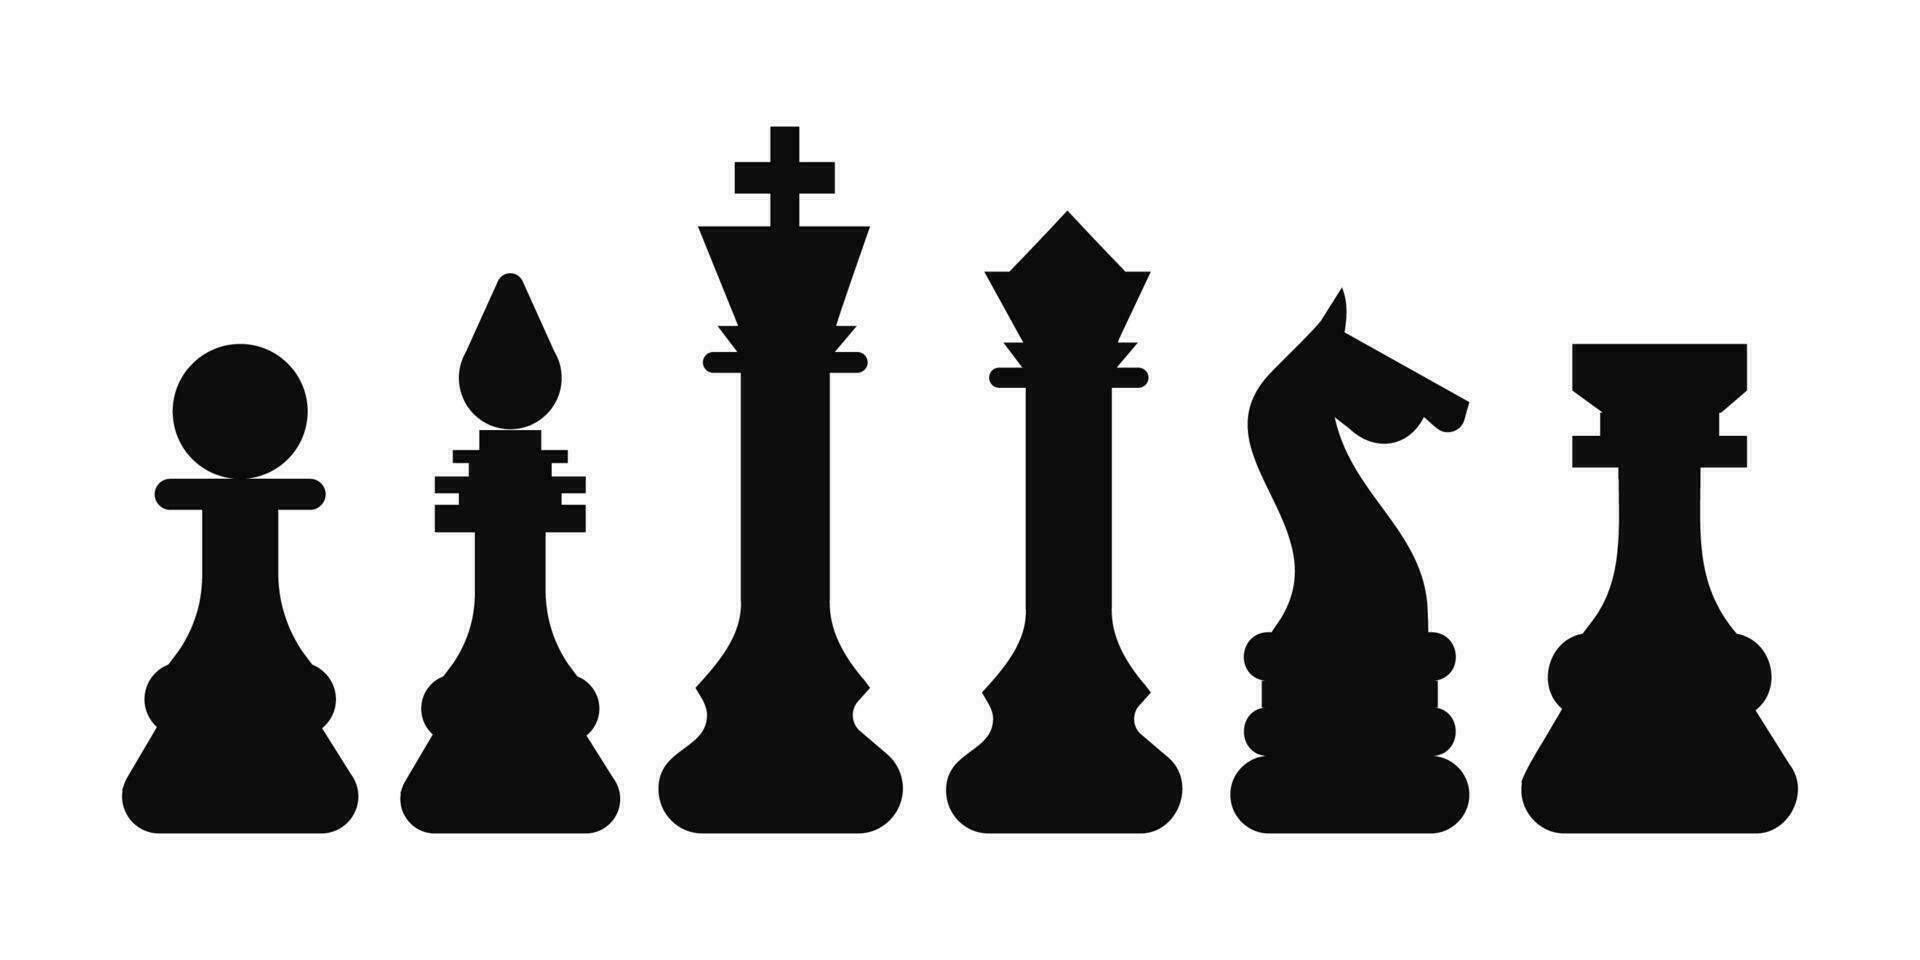 schaak symbool ontwerp kunst vrije tijd strategie. sport pictogram spel concept vector Dobbelsteen bord. figuur koning, koningin, bisschop, ridder, toren, pion.